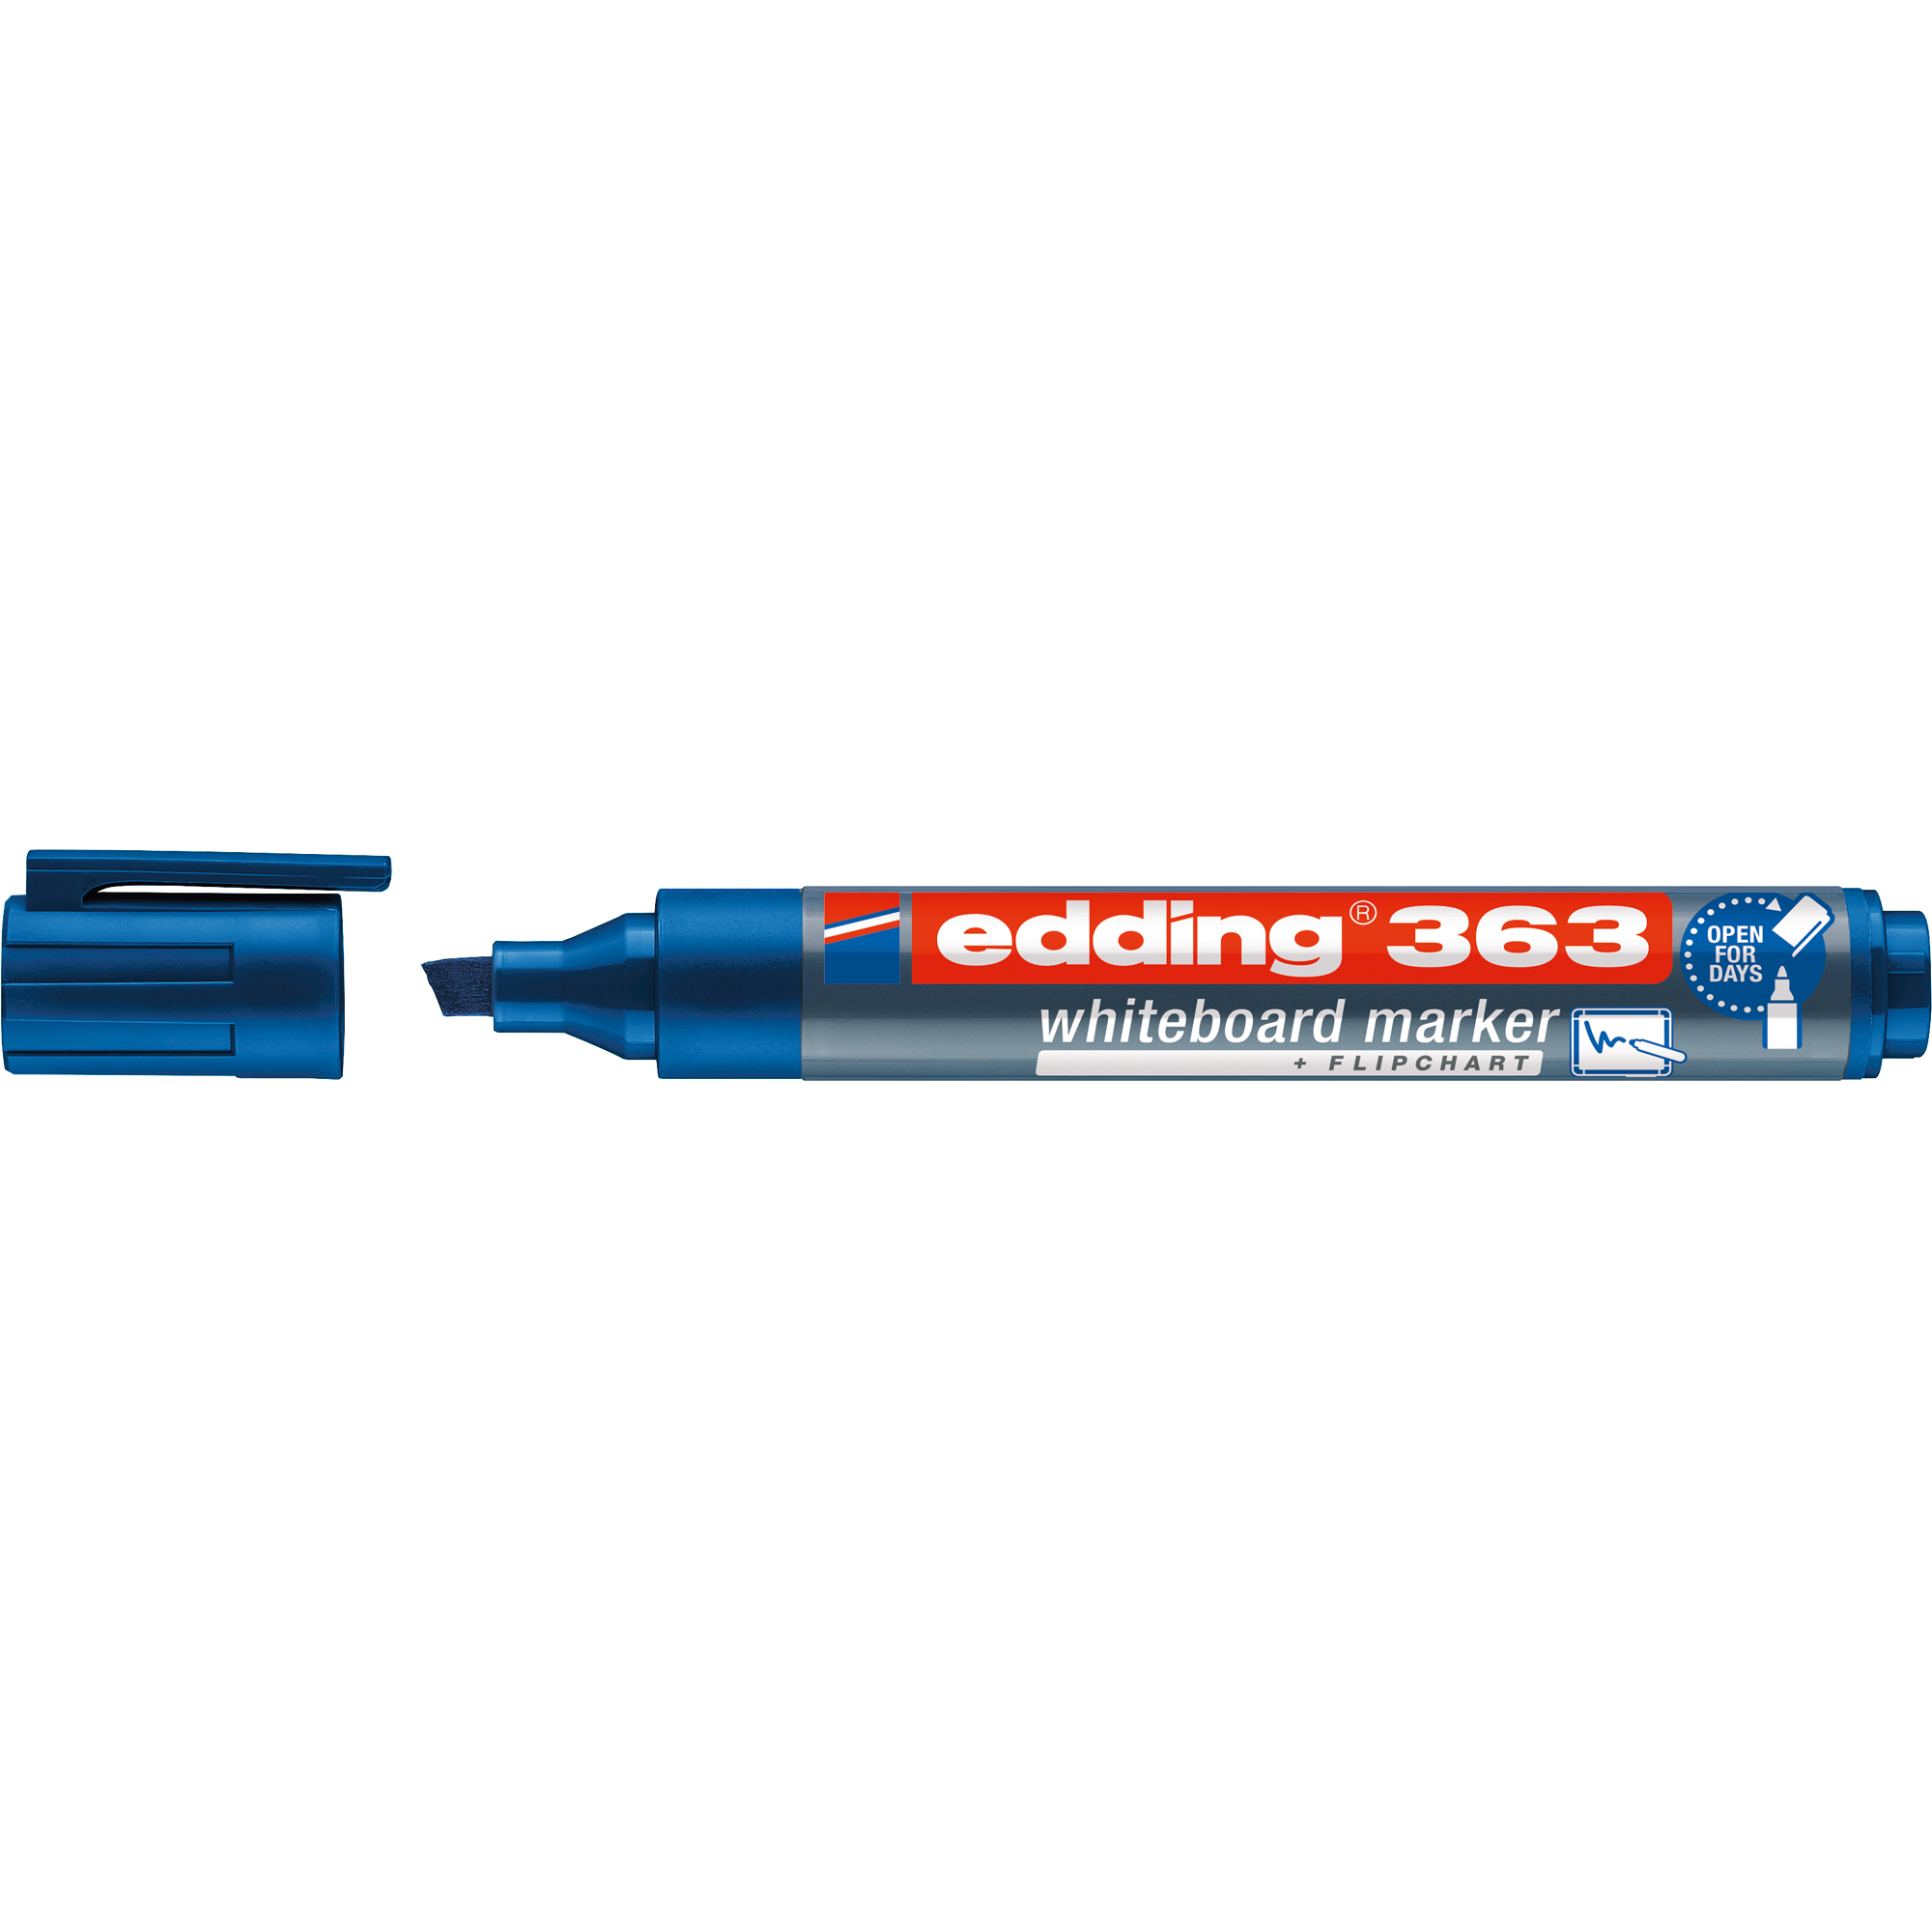 EDDING Whiteboardmarker 363 1-5mm blau Keilspitze Whiteboardmarker